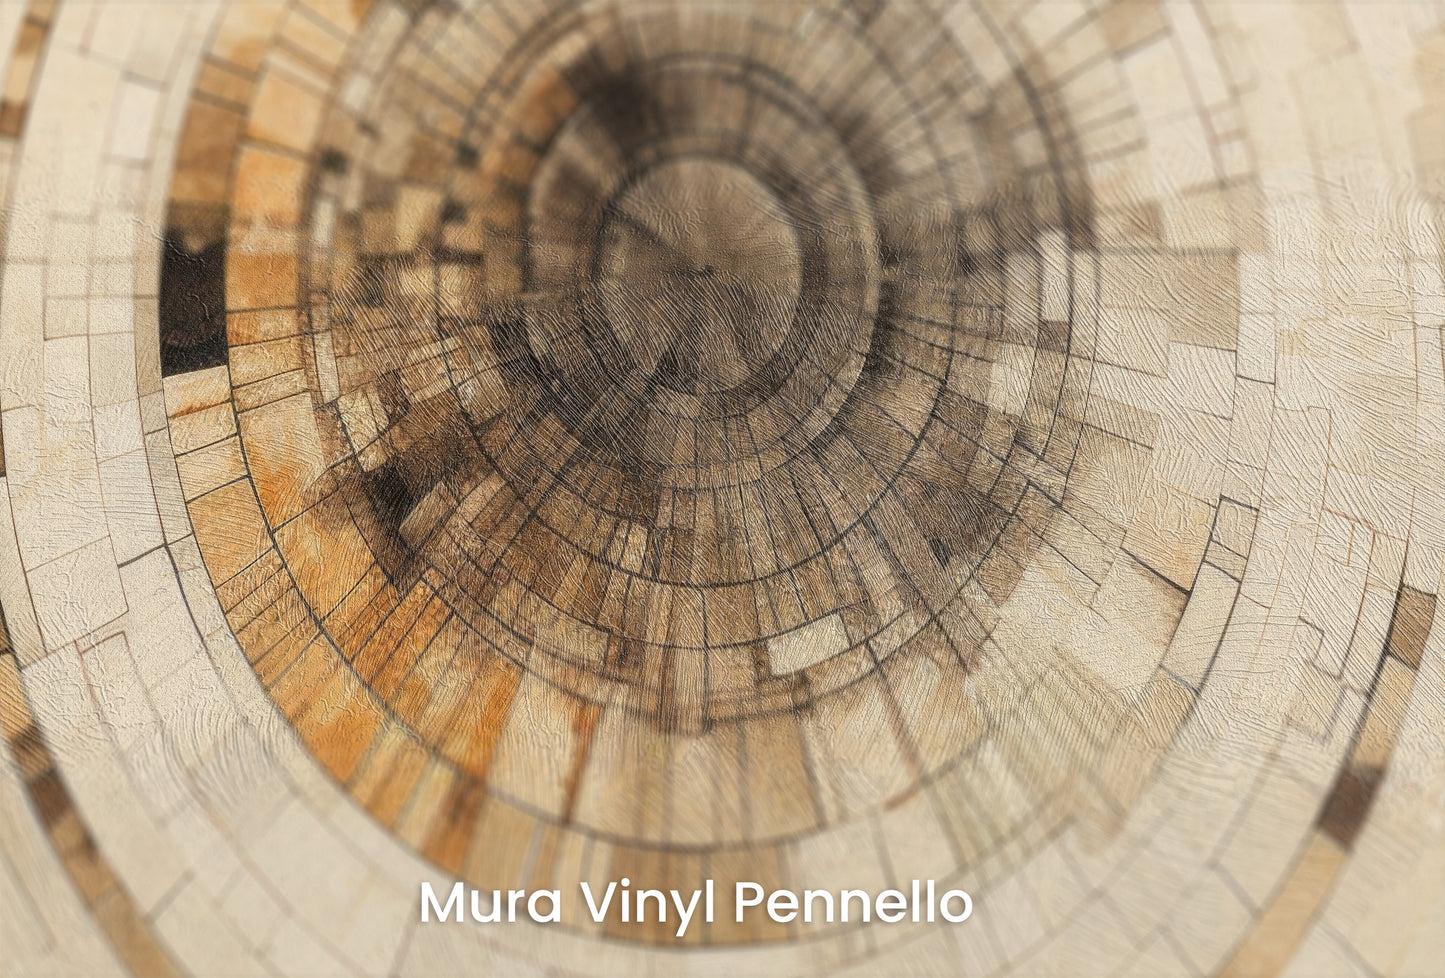 Zbliżenie na artystyczną fototapetę o nazwie ANCIENT ECHOES SPIRAL na podłożu Mura Vinyl Pennello - faktura pociągnięć pędzla malarskiego.